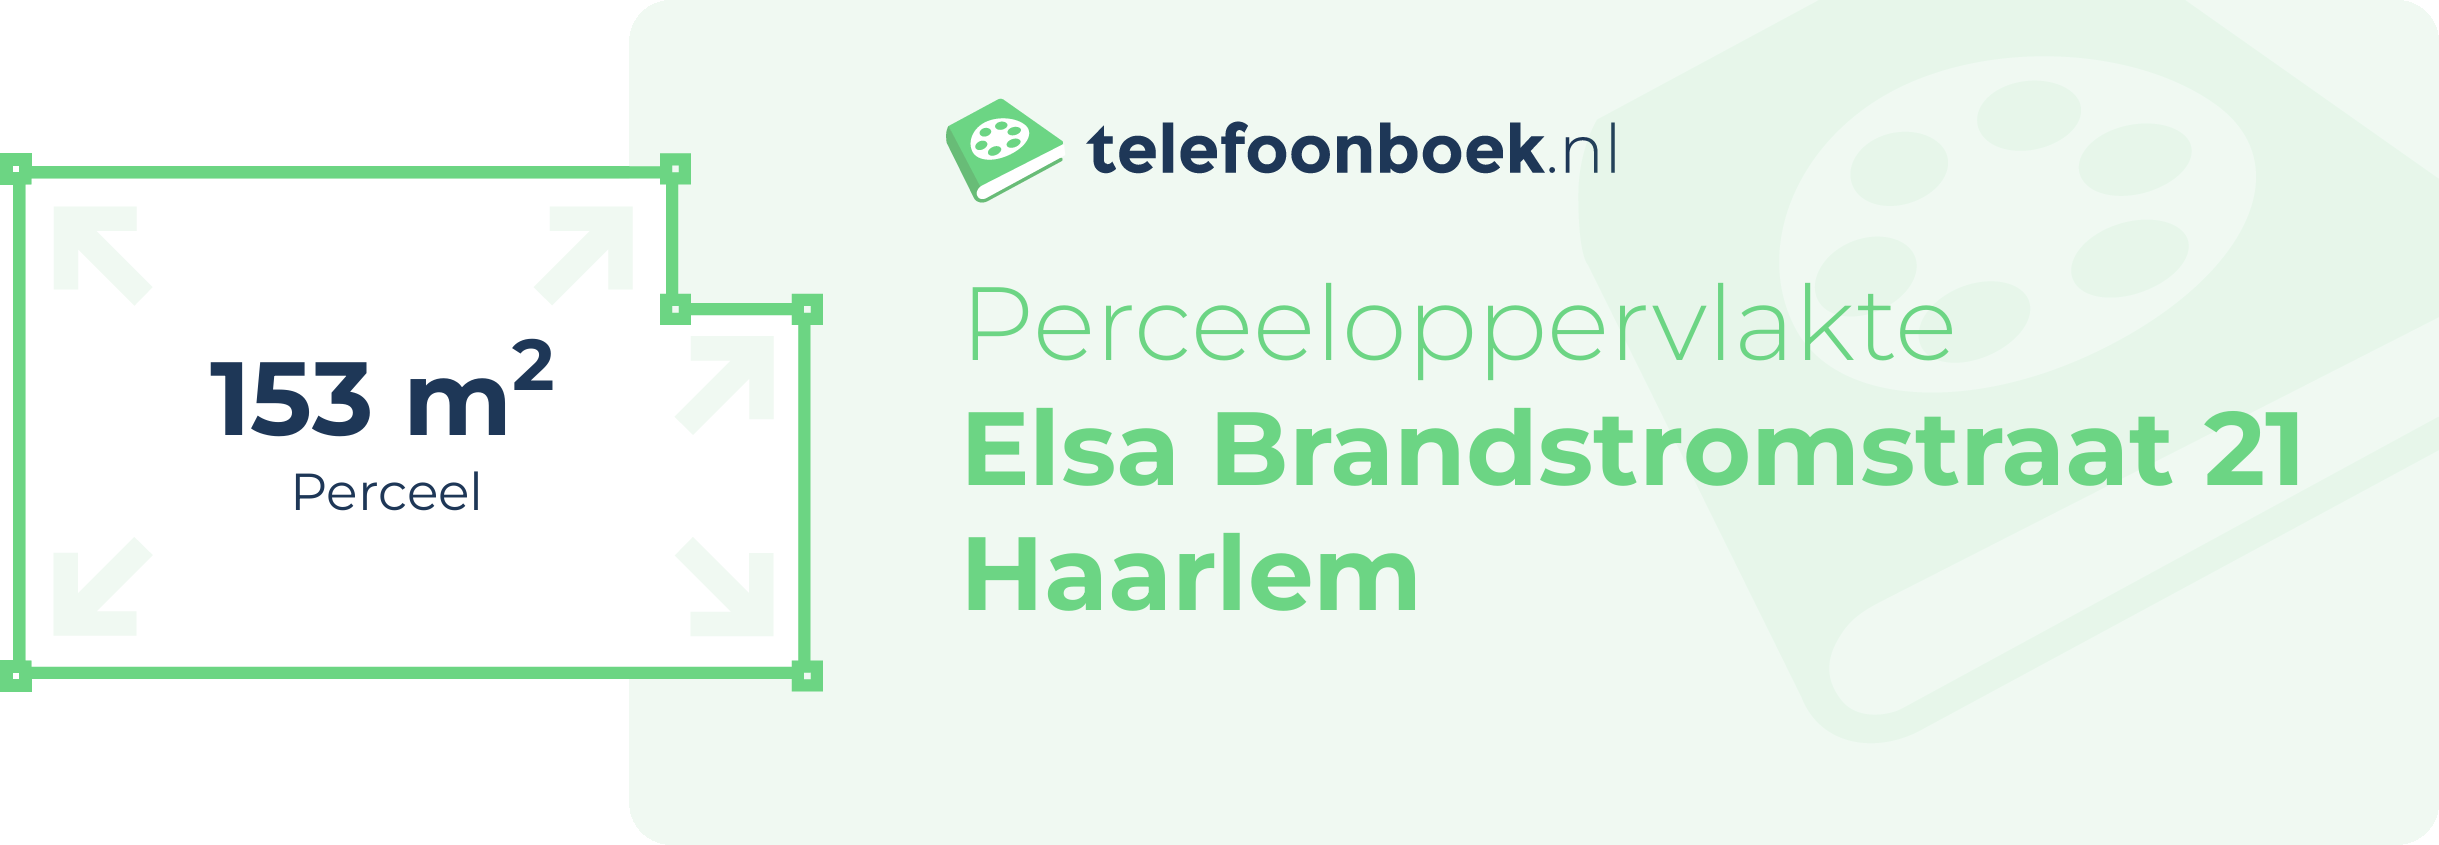 Perceeloppervlakte Elsa Brandstromstraat 21 Haarlem